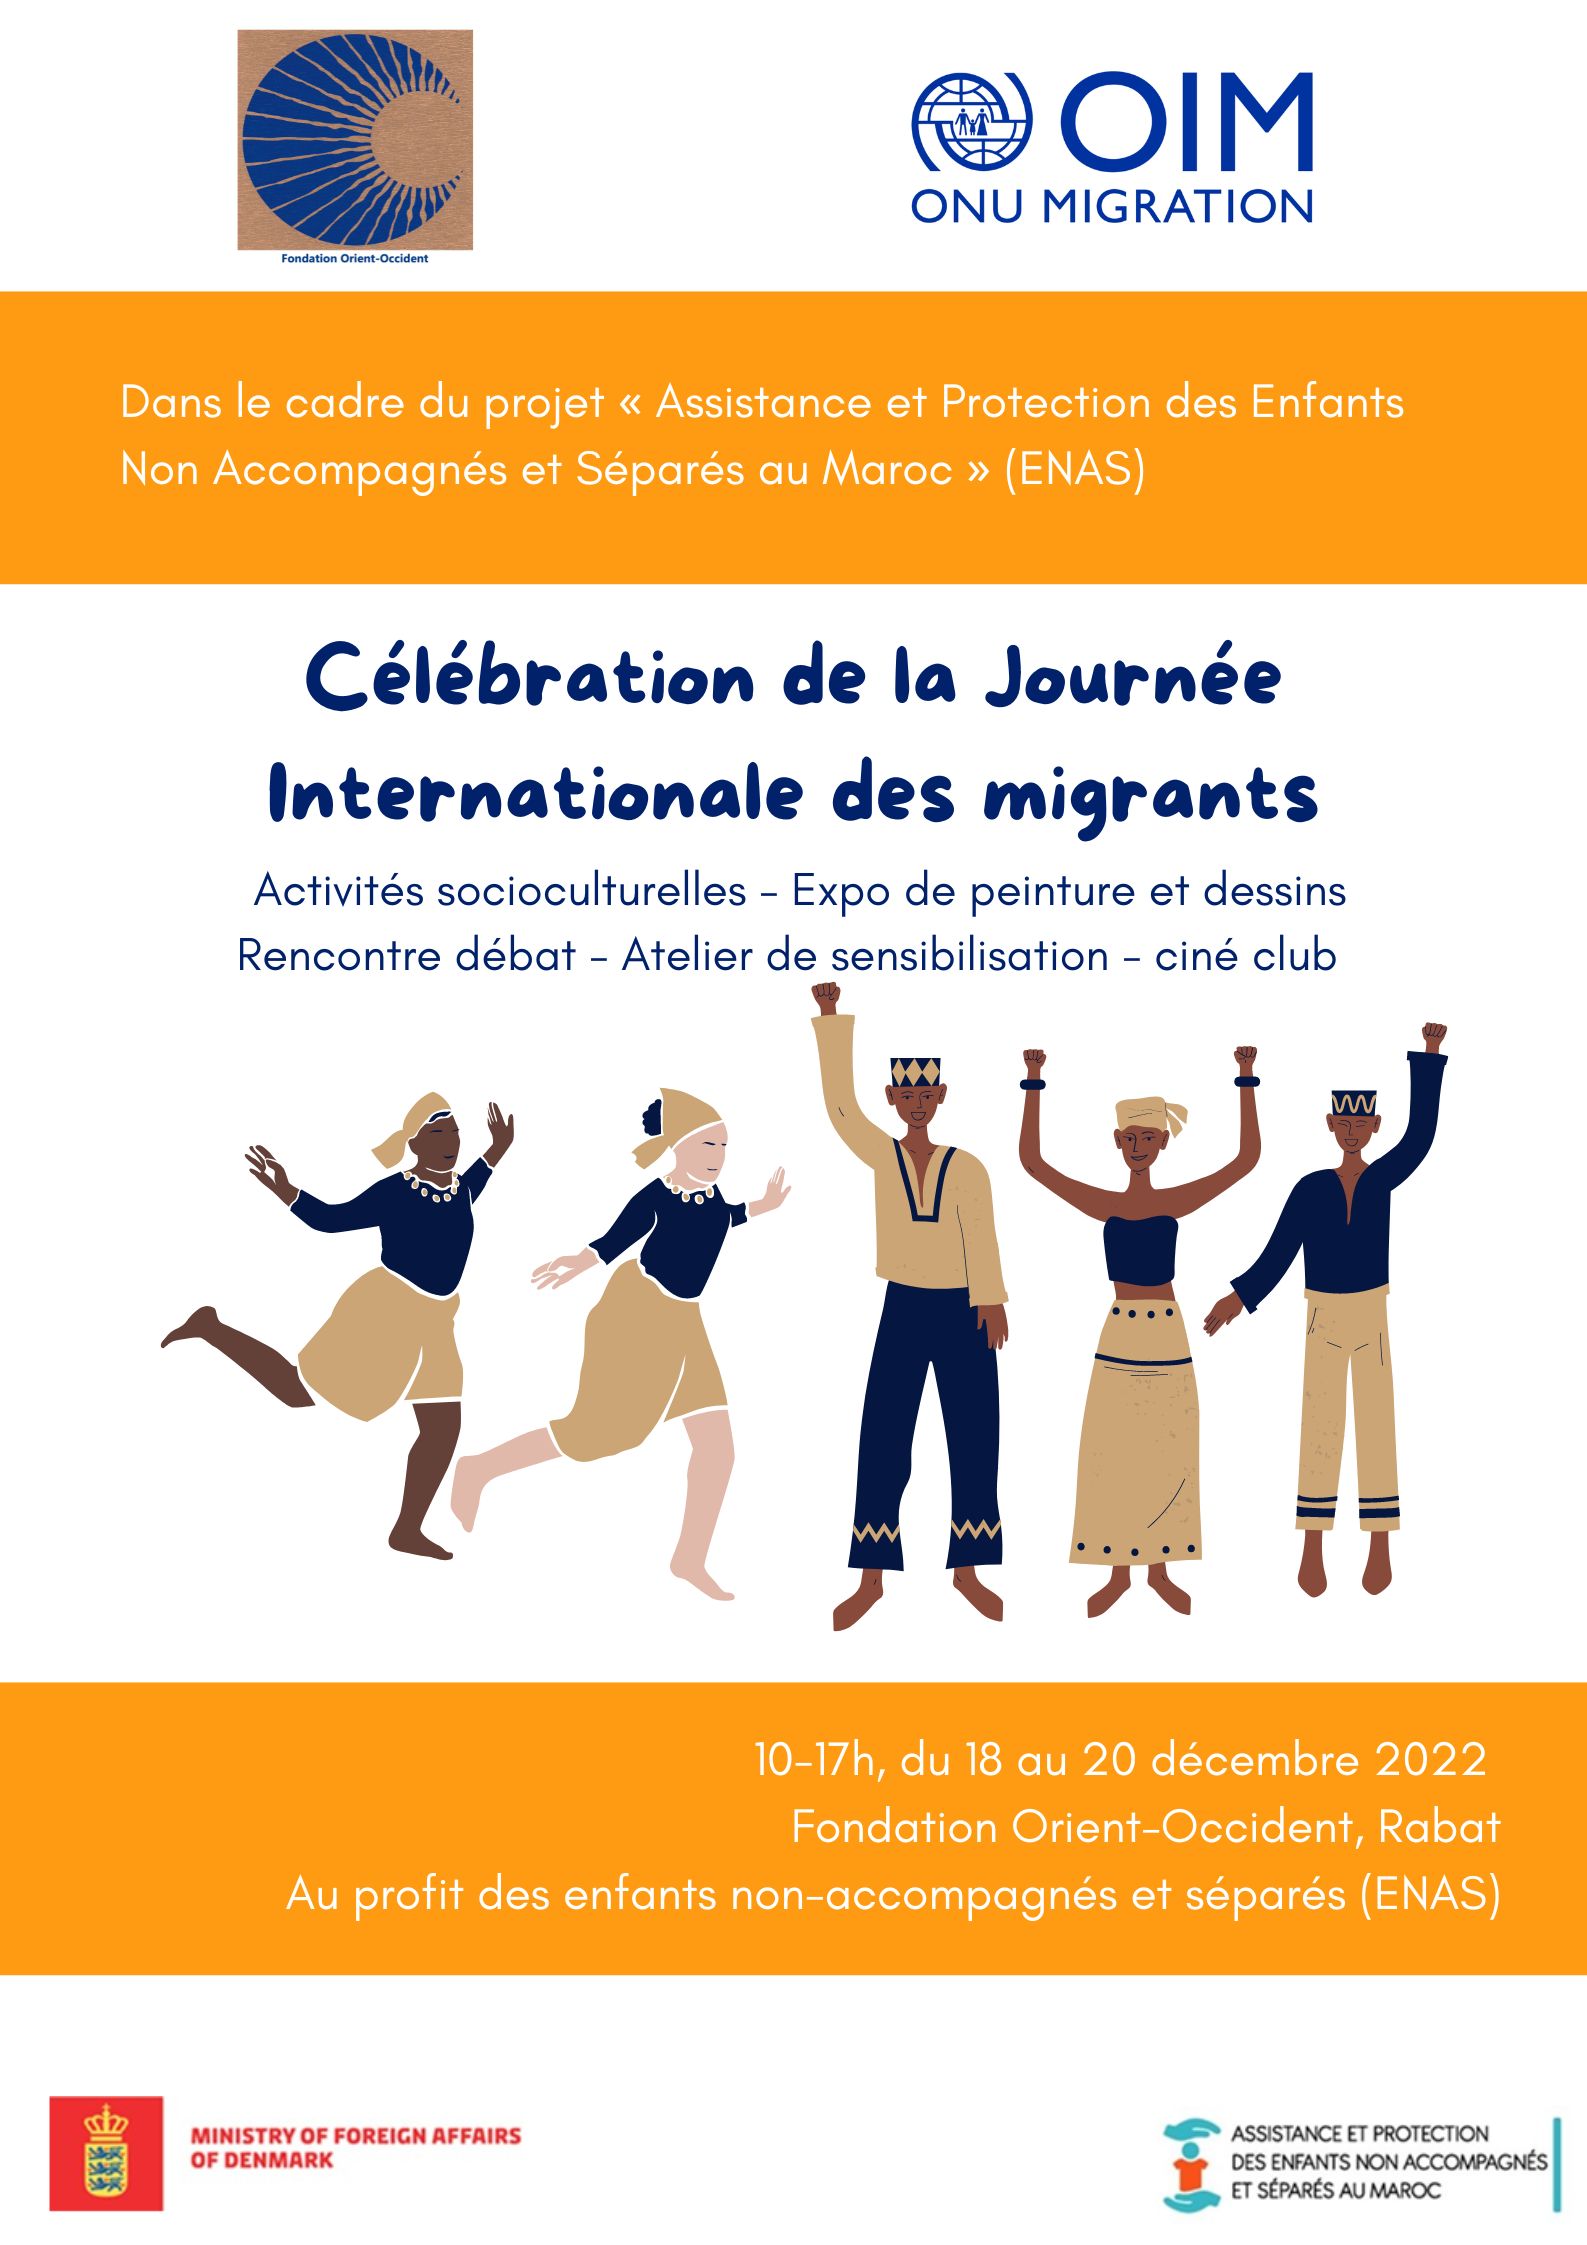 Célebration de la Journée Internationale des migrants